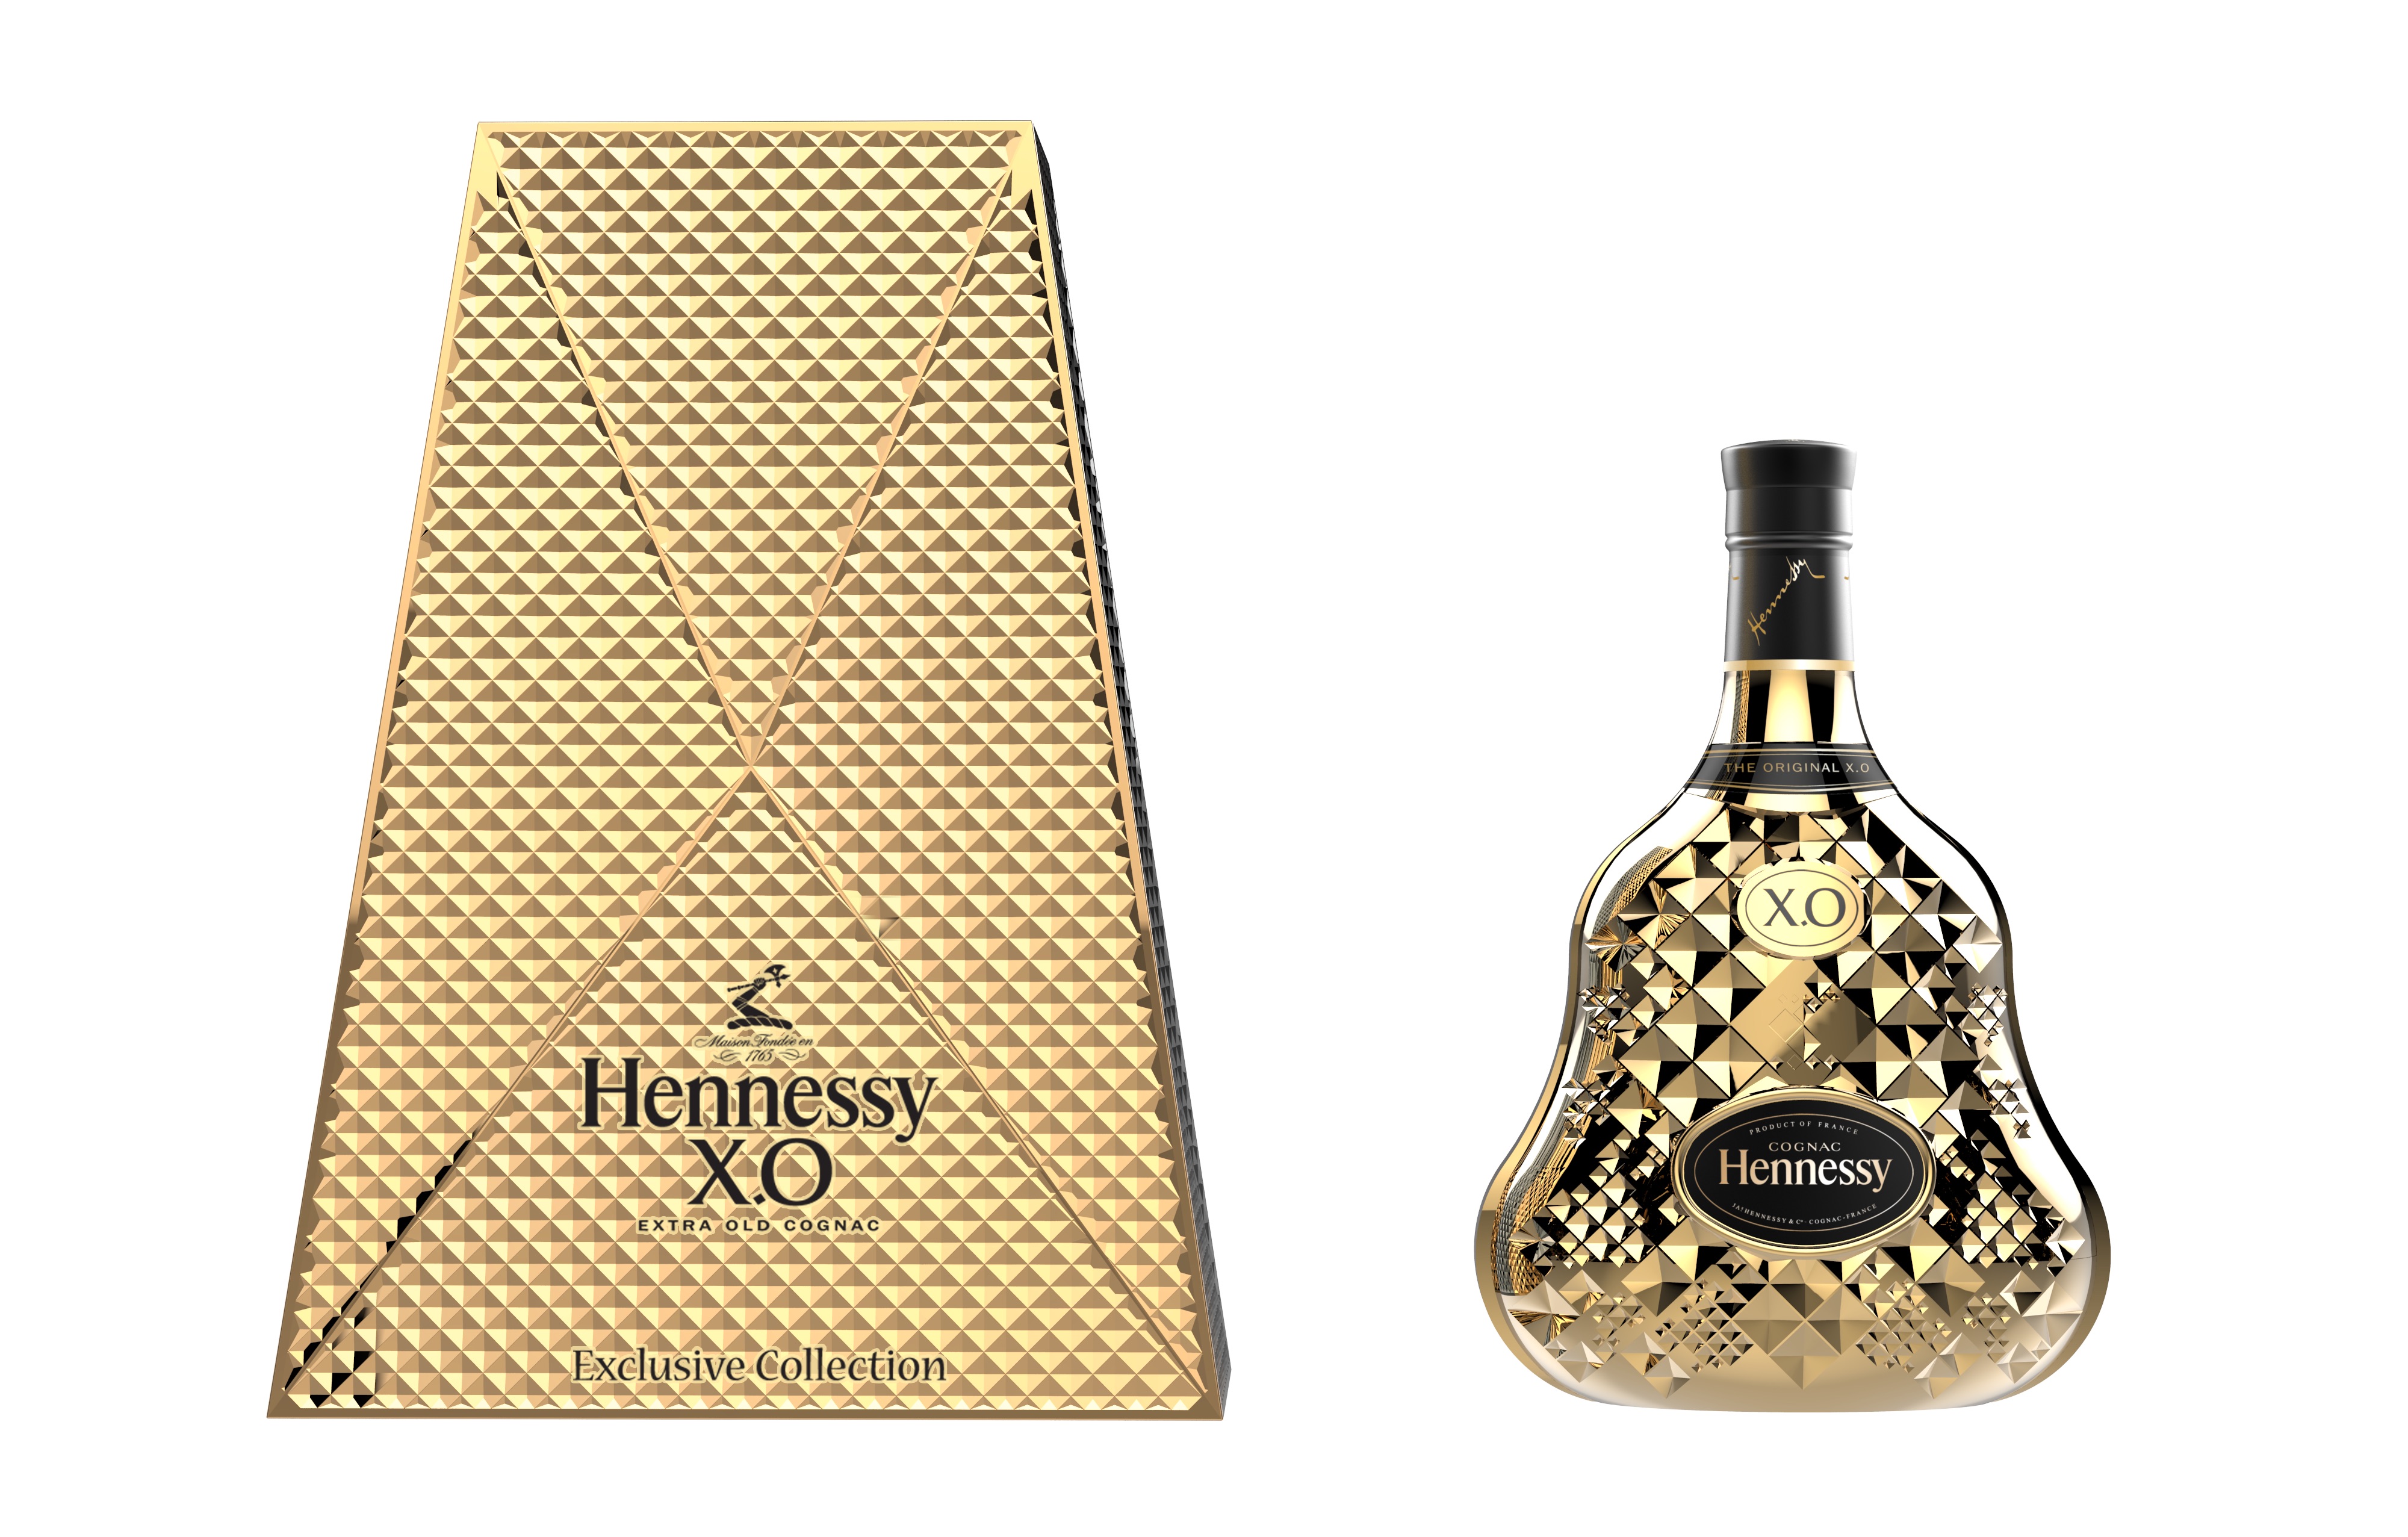 Návrh designu původní karafy lahve Hennessy X.O pochází už z roku 1947. Na tom novém pro rok 2015 pracoval designér Tom Dixon celé tři roky.